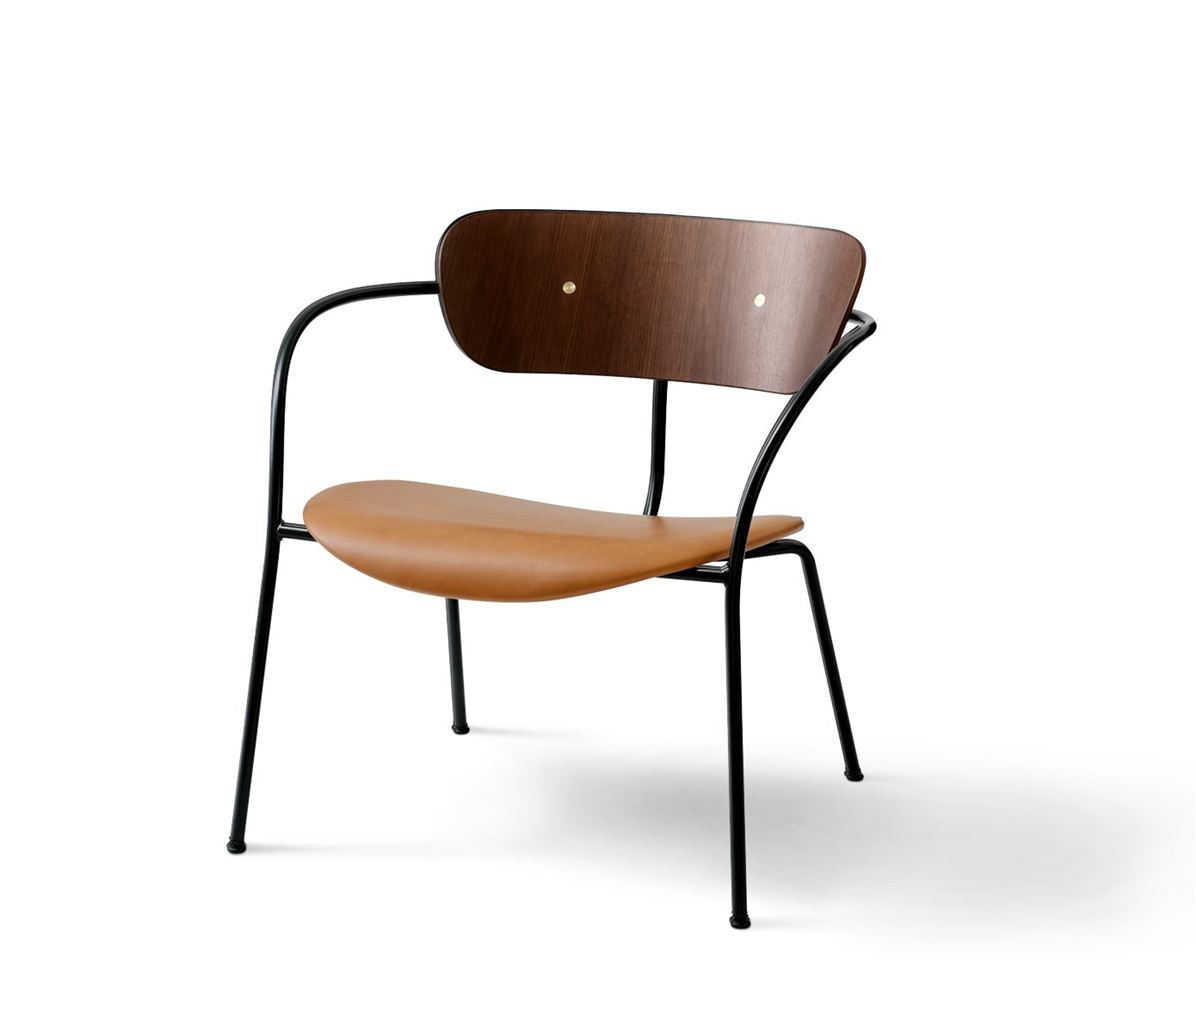 Bild von &Tradition Pavilion Lounge Chair AV6 – Walnuss/Cognac-Leder mit Messing